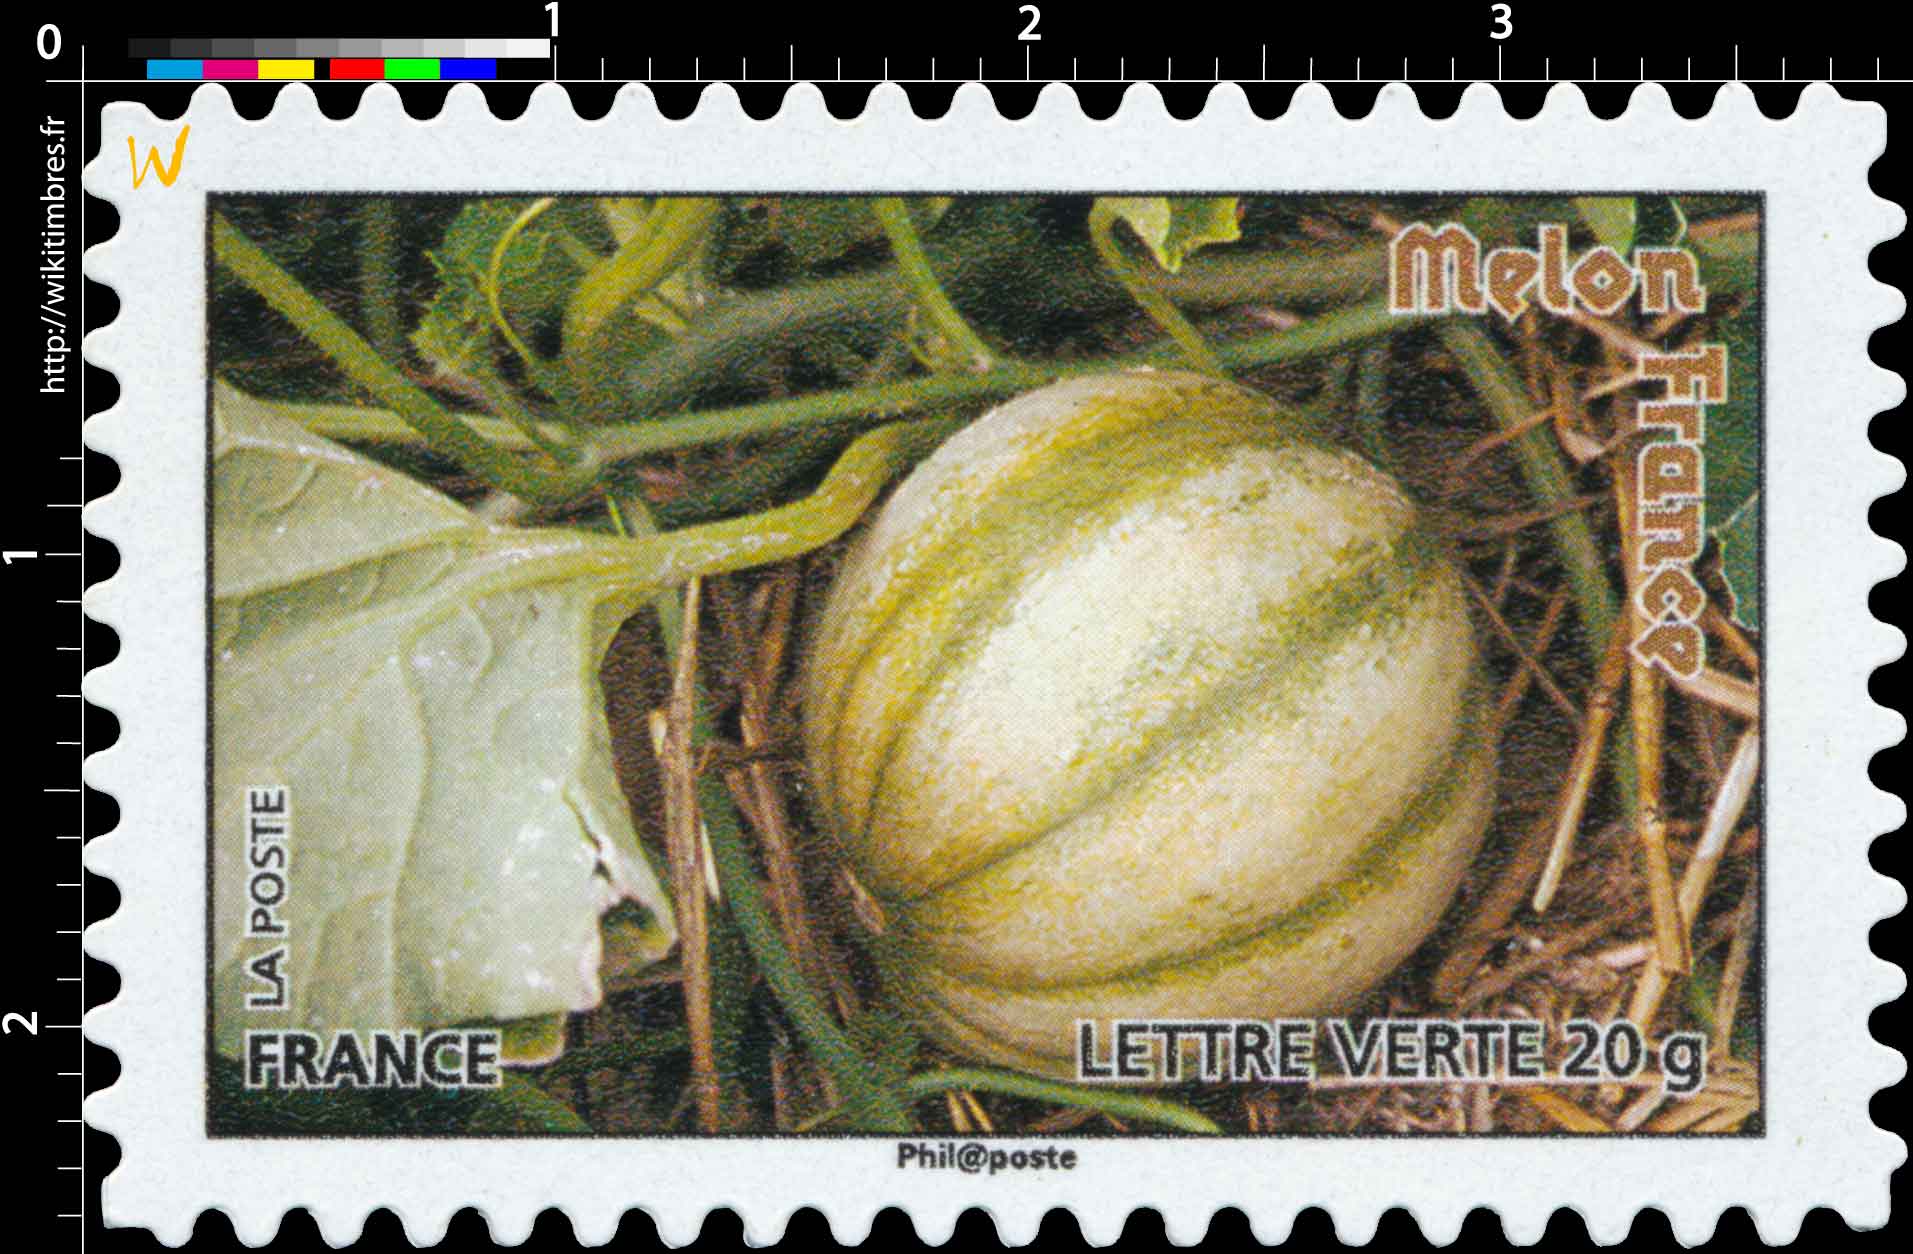  melon France